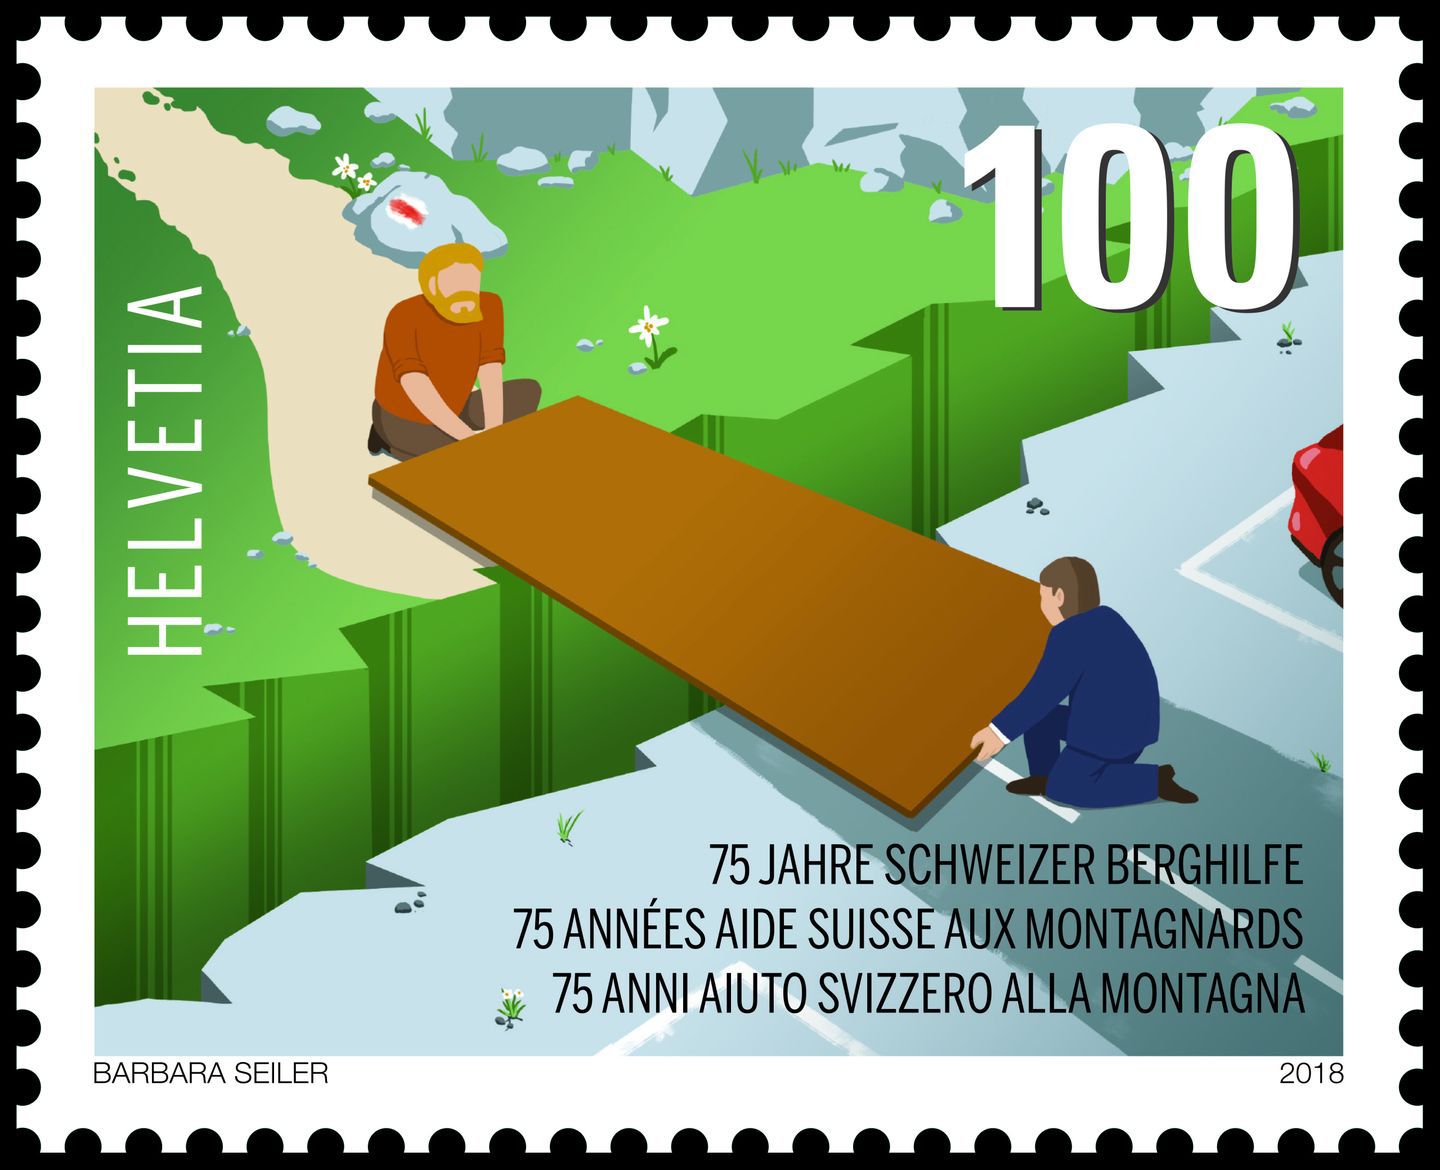 Barbara Seiler a choisi d'illustrer son timbre avec un pont. Un symbole qui illustre la solidarité entre la Suisse urbaine et les régions de montagne.